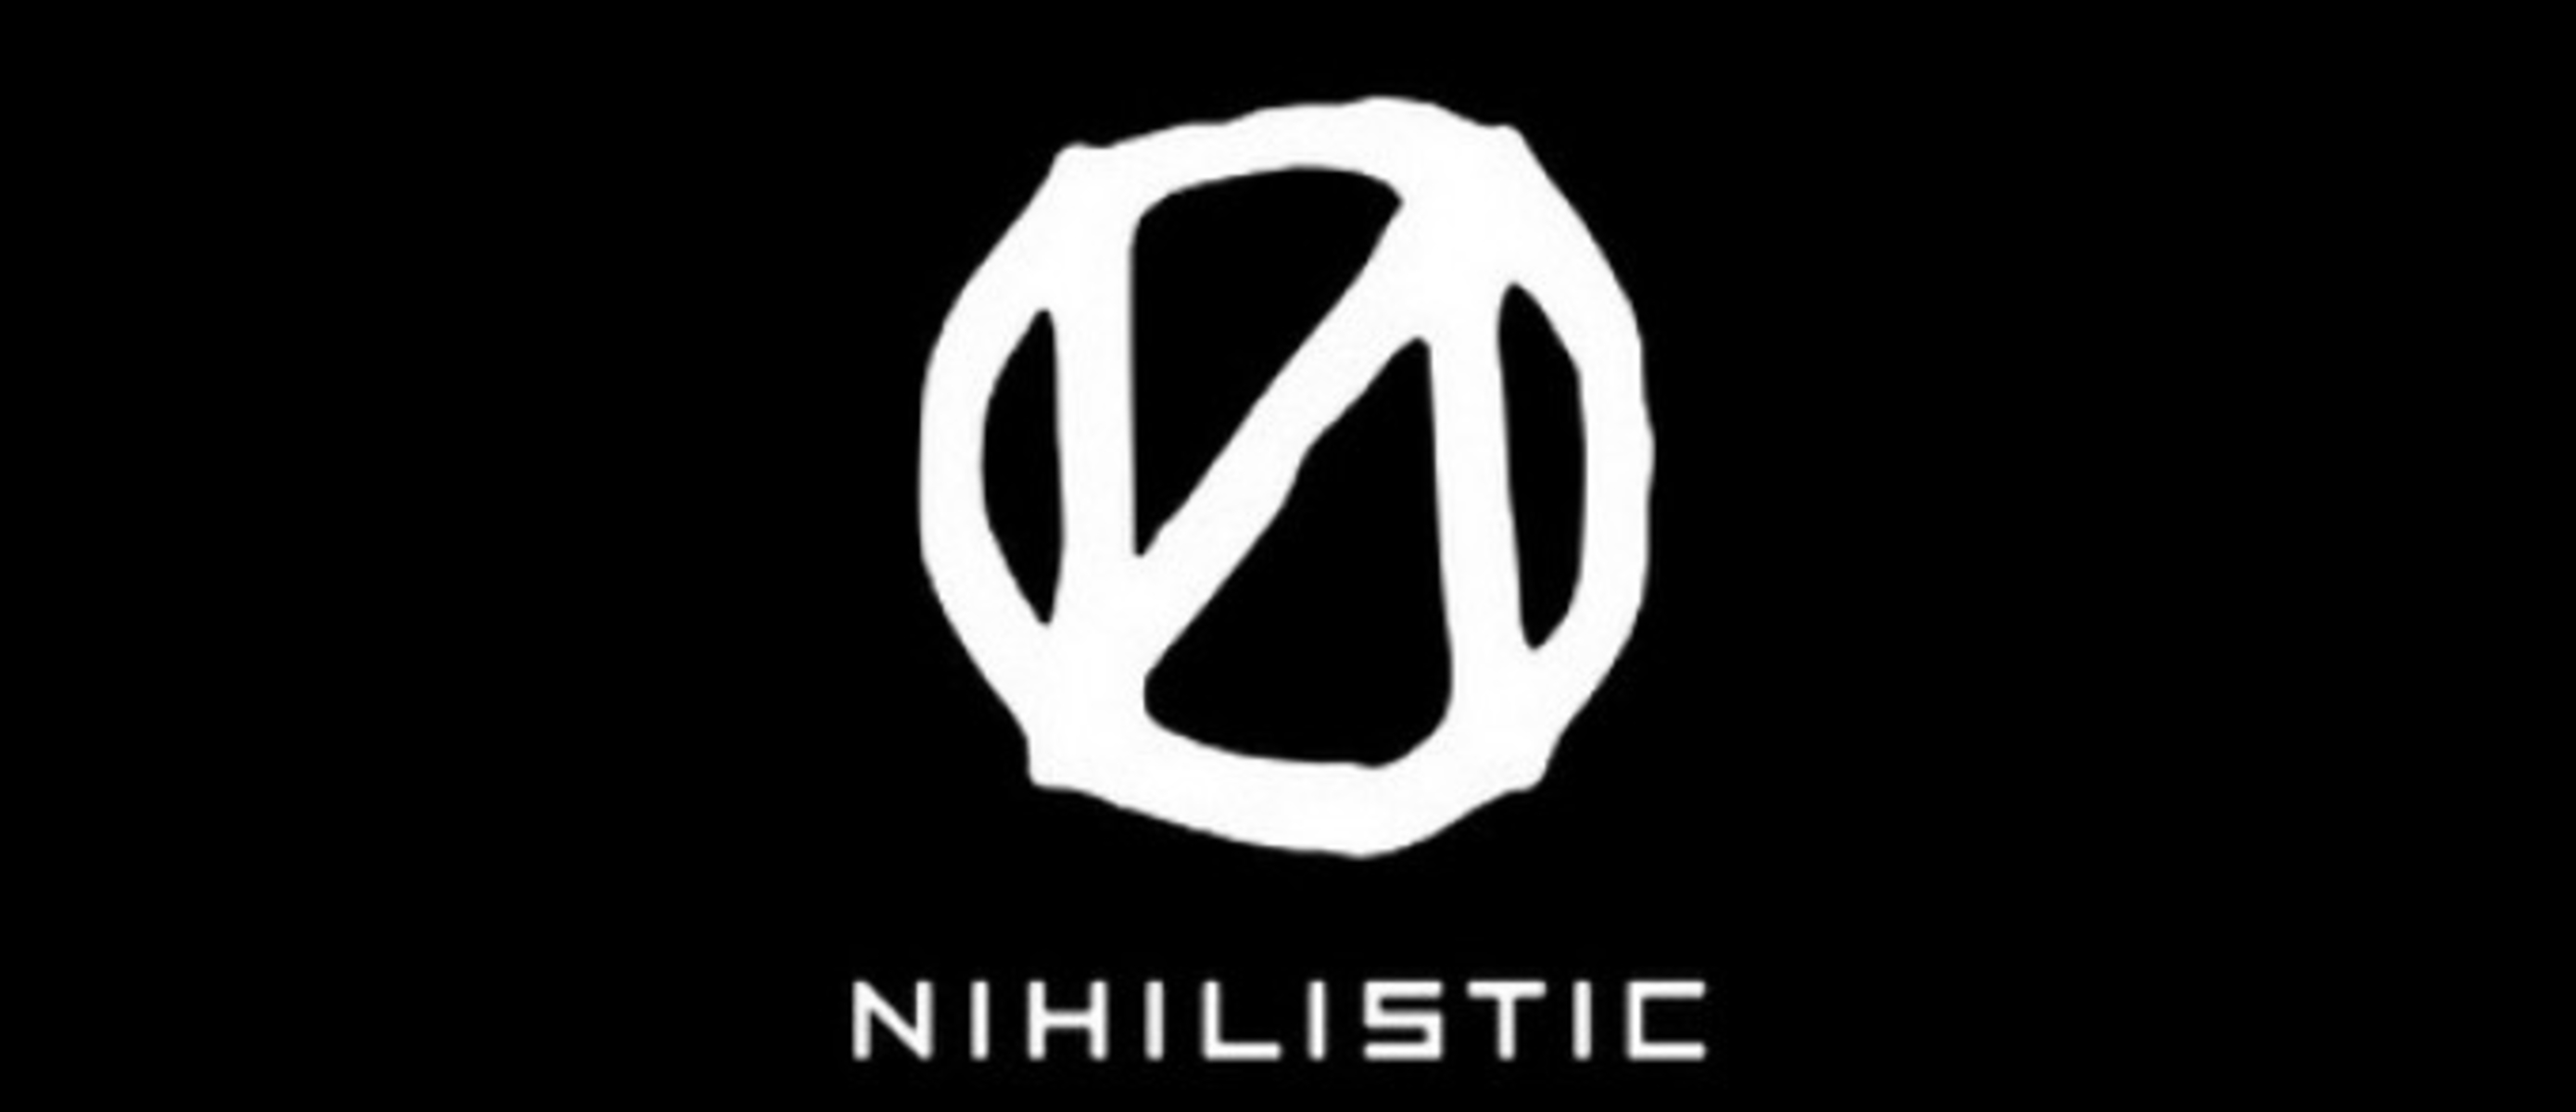 Nicholistic